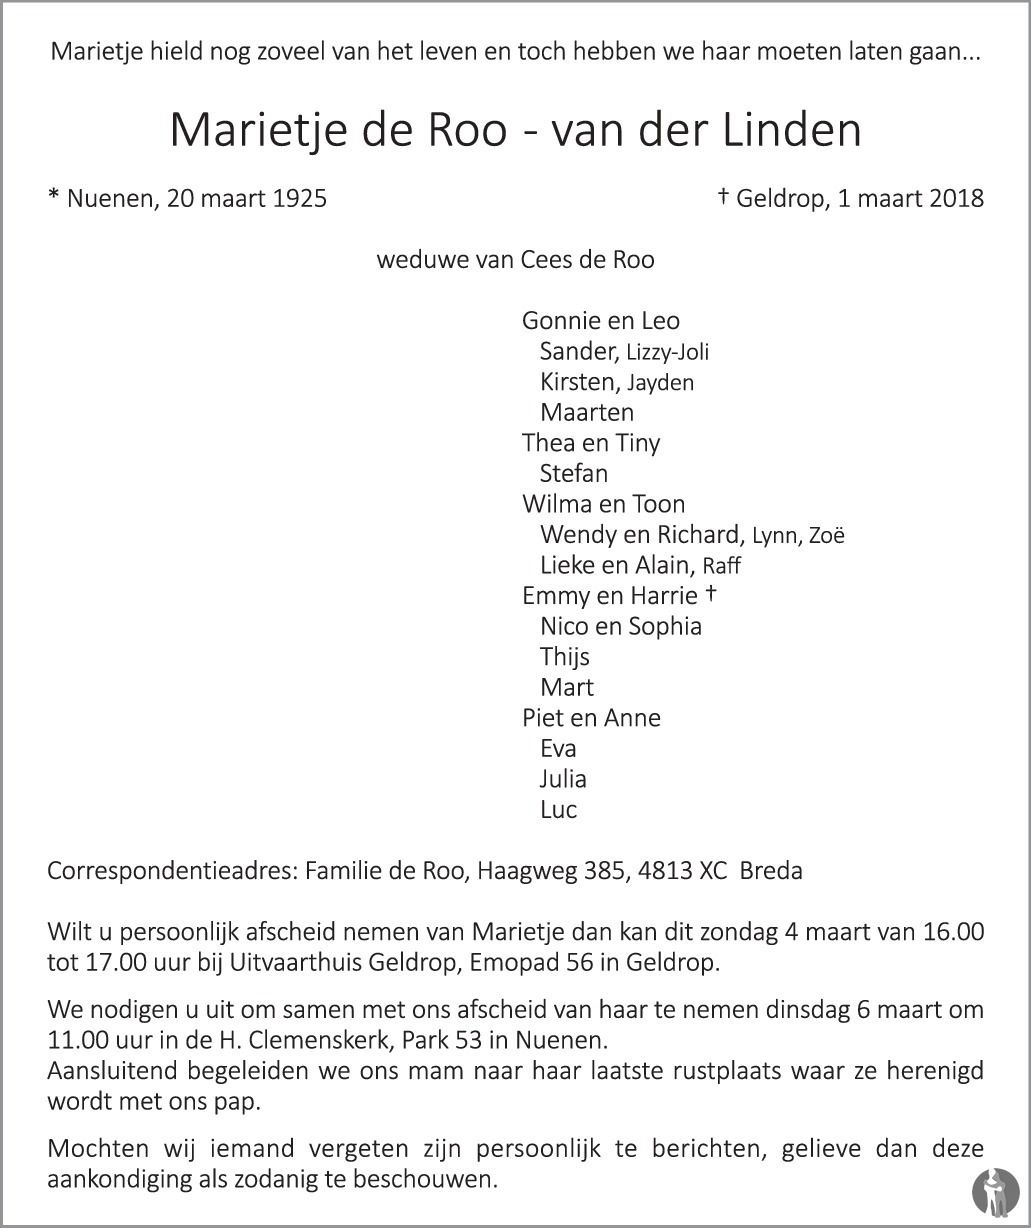 Overlijdensbericht van Marietje de Roo - van der Linde in Eindhovens Dagblad